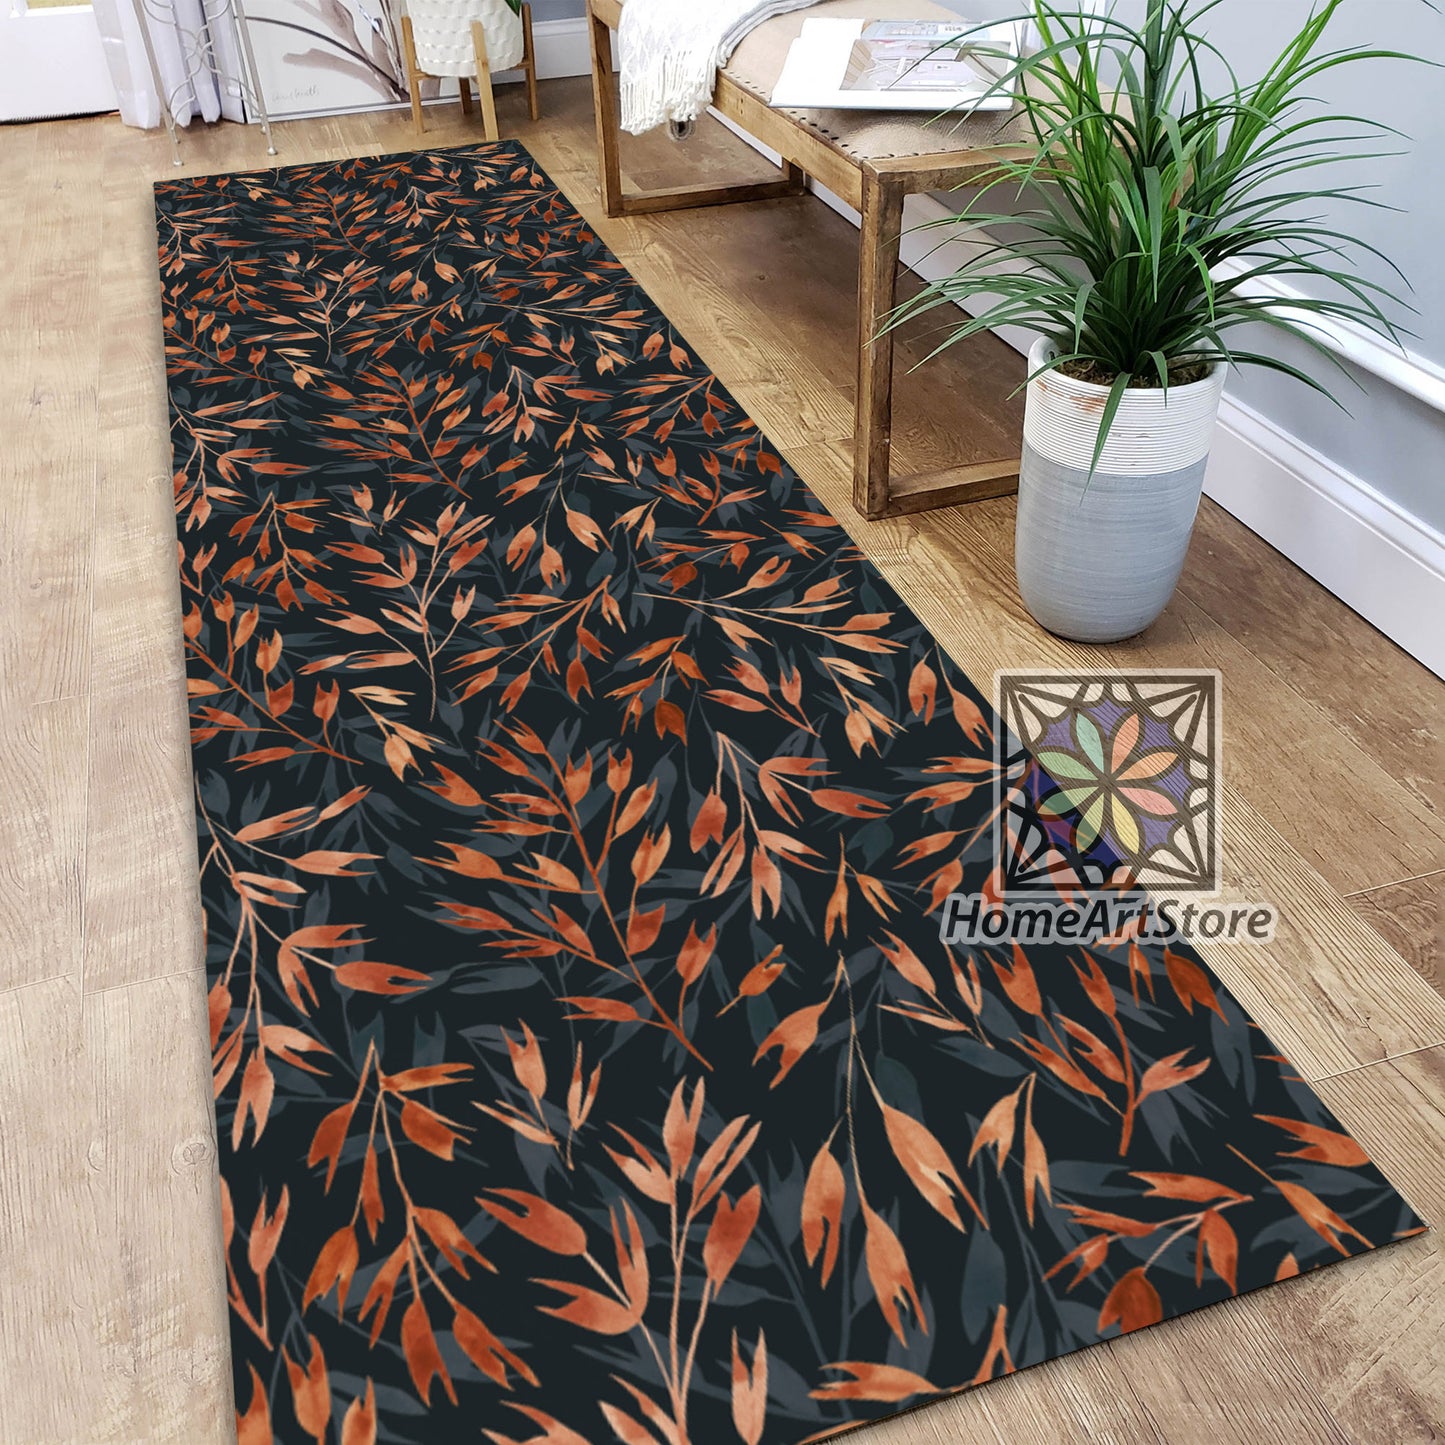 Leaves Pattern Runner Rug, Hallway Runner Carpet, Decorative Kitchen Runner Mat, Dried Leaves Themed Rug